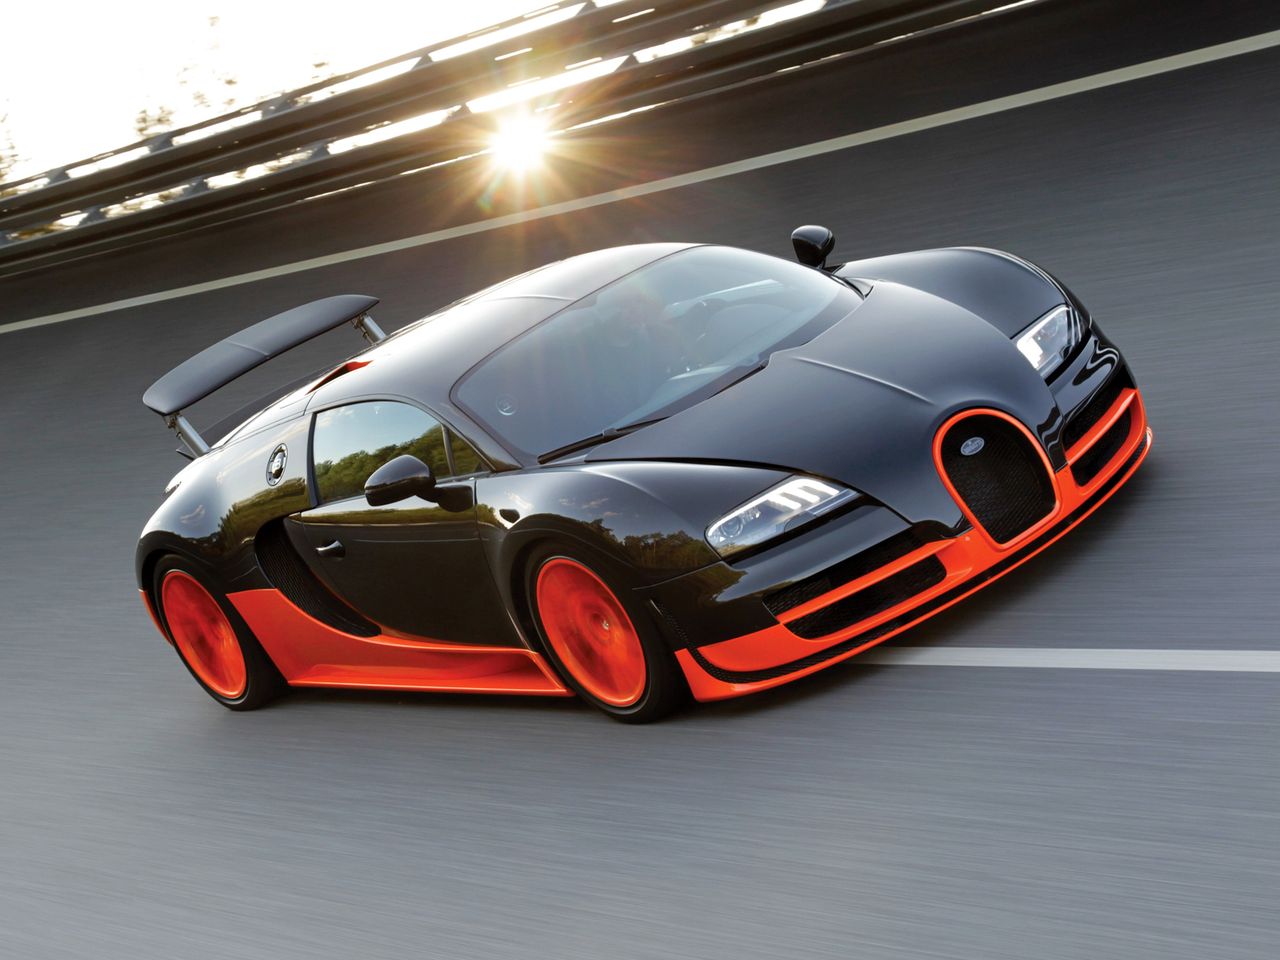 W 2010 roku Bugatti znów wybiło się ponad konkurencję. Wzmocniony Veyron Super Sport osiągnął 431 km/h, tym samym ponownie podnosząc poprzeczkę. Osiągnięcie tej prędkości było możliwe dzięki 1200 KM i 1500 Nm. Produkcja Super Sporta została ograniczona do 30 egzemplarzy. 5 sztuk to wersje World Record Edition, które zostały pomalowane na czarno w górnej części, a w dolnej na pomarańczowo.